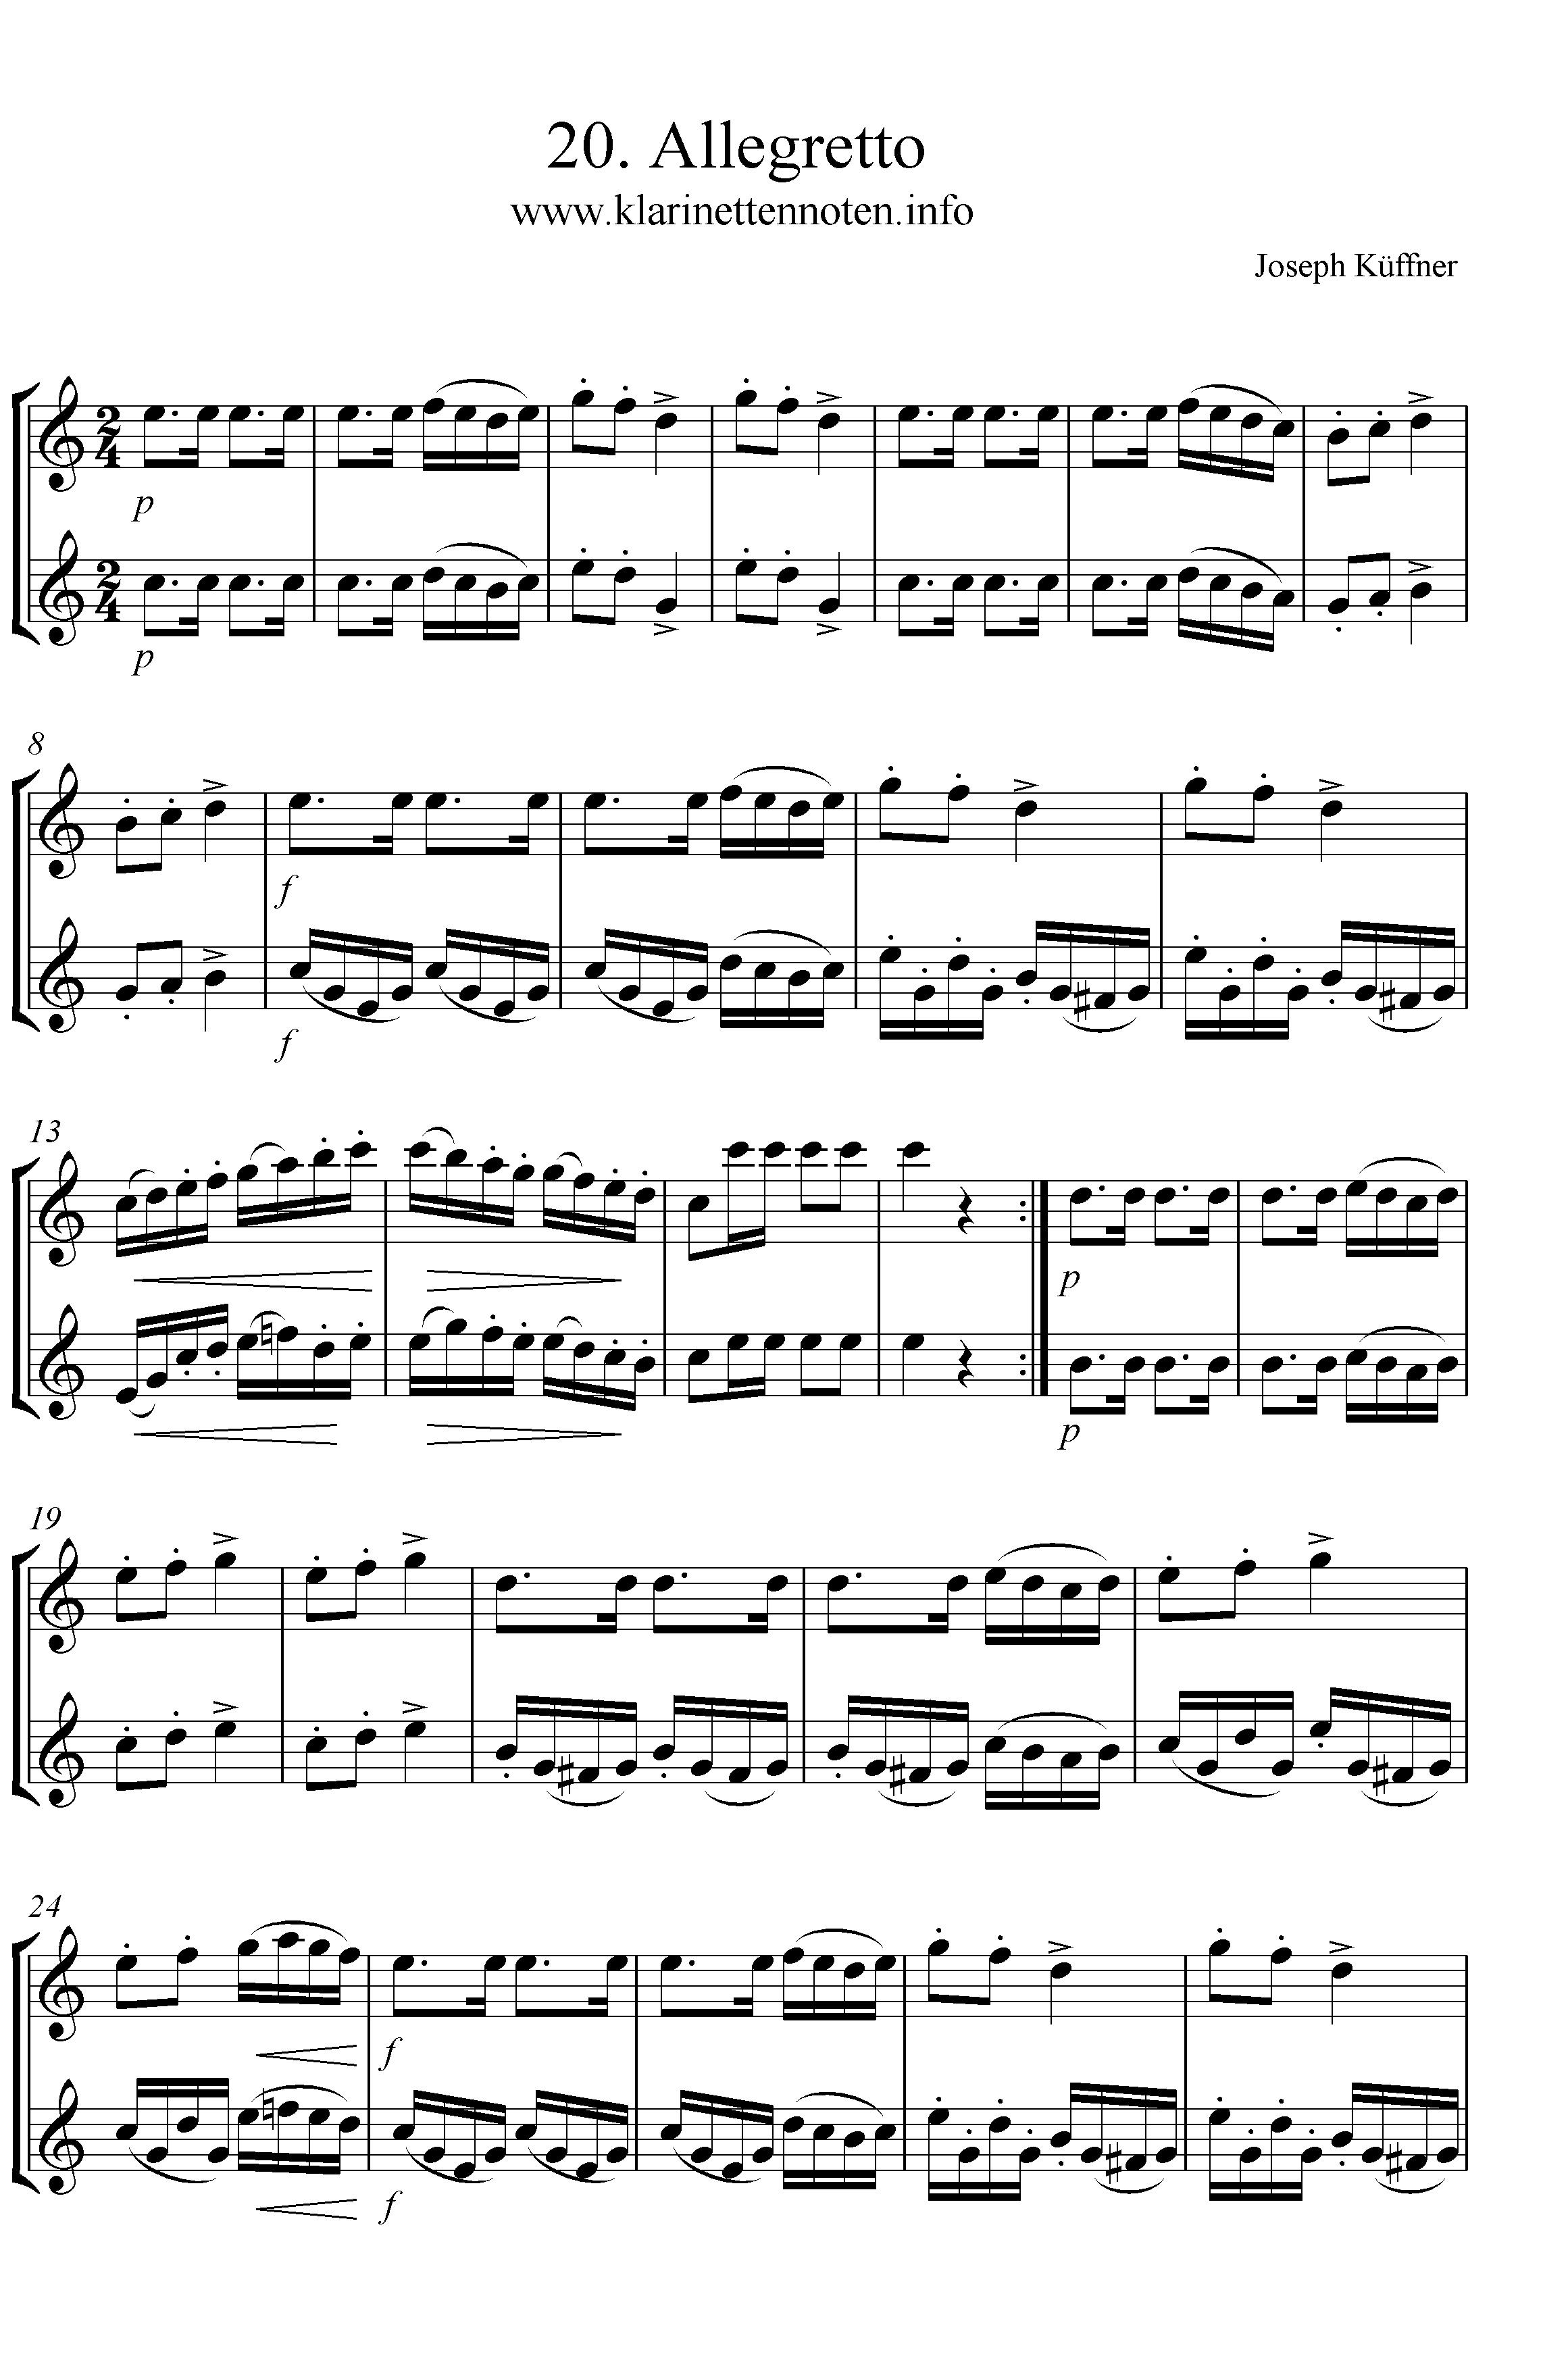 24 instruktive Duette- Joseph Küffner -20 Allegretto